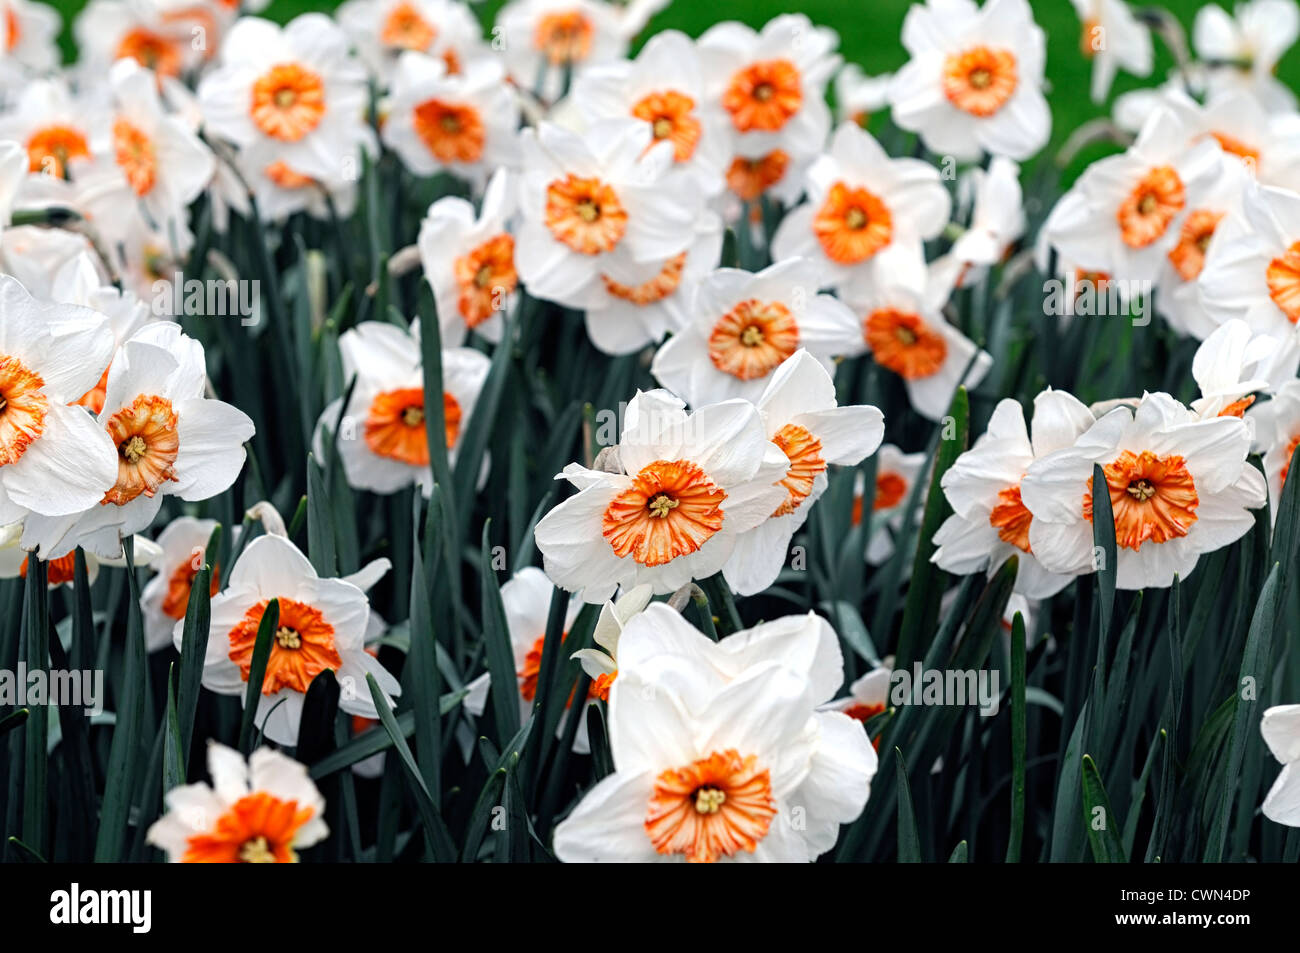 Le professeur narcisse jonquille einstein blanc orange grandes fleurs en coupe jonquilles narcisses bulbes printemps selective focus flowerin Banque D'Images